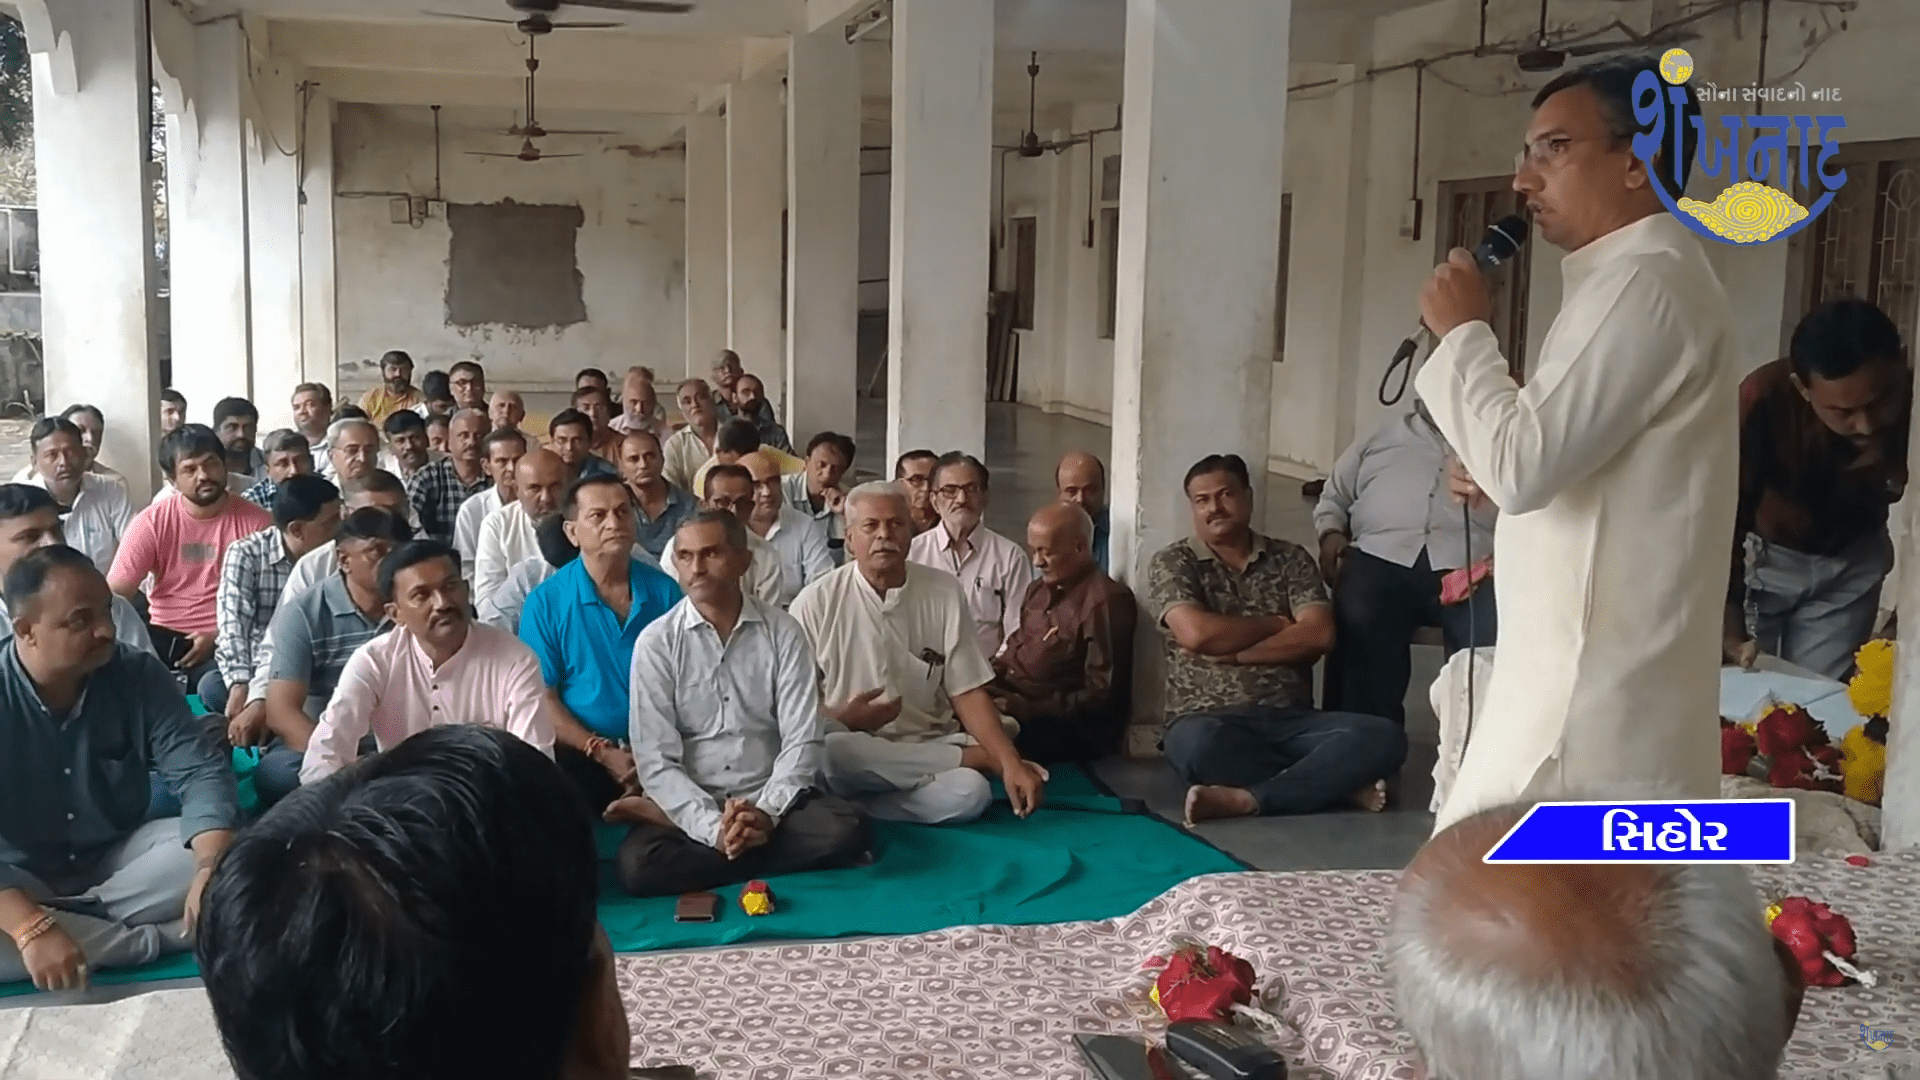 A meeting was held by the Brahmo Samaj at Sihore Pabuji Temple.